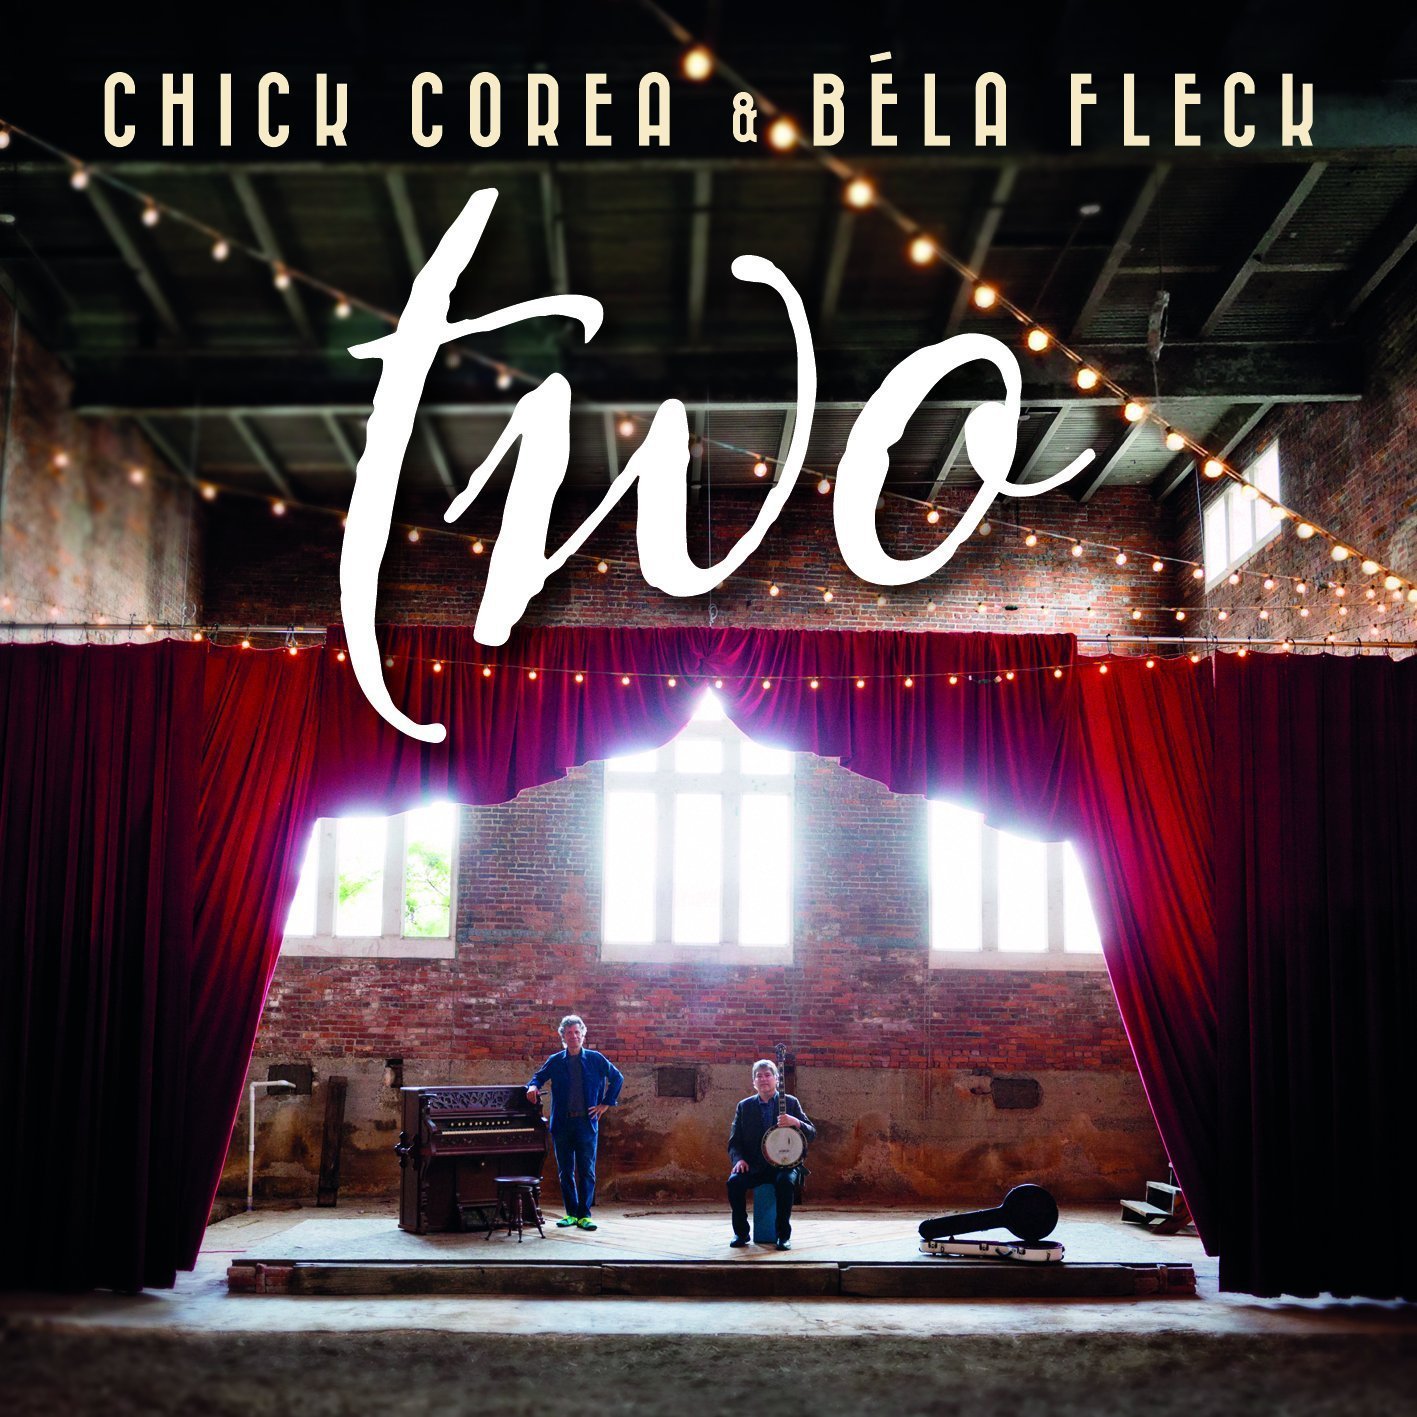 Chick Corea and Bela Fleck – Two (2015) [AcousticSounds FLAC 24bit/96kHz]